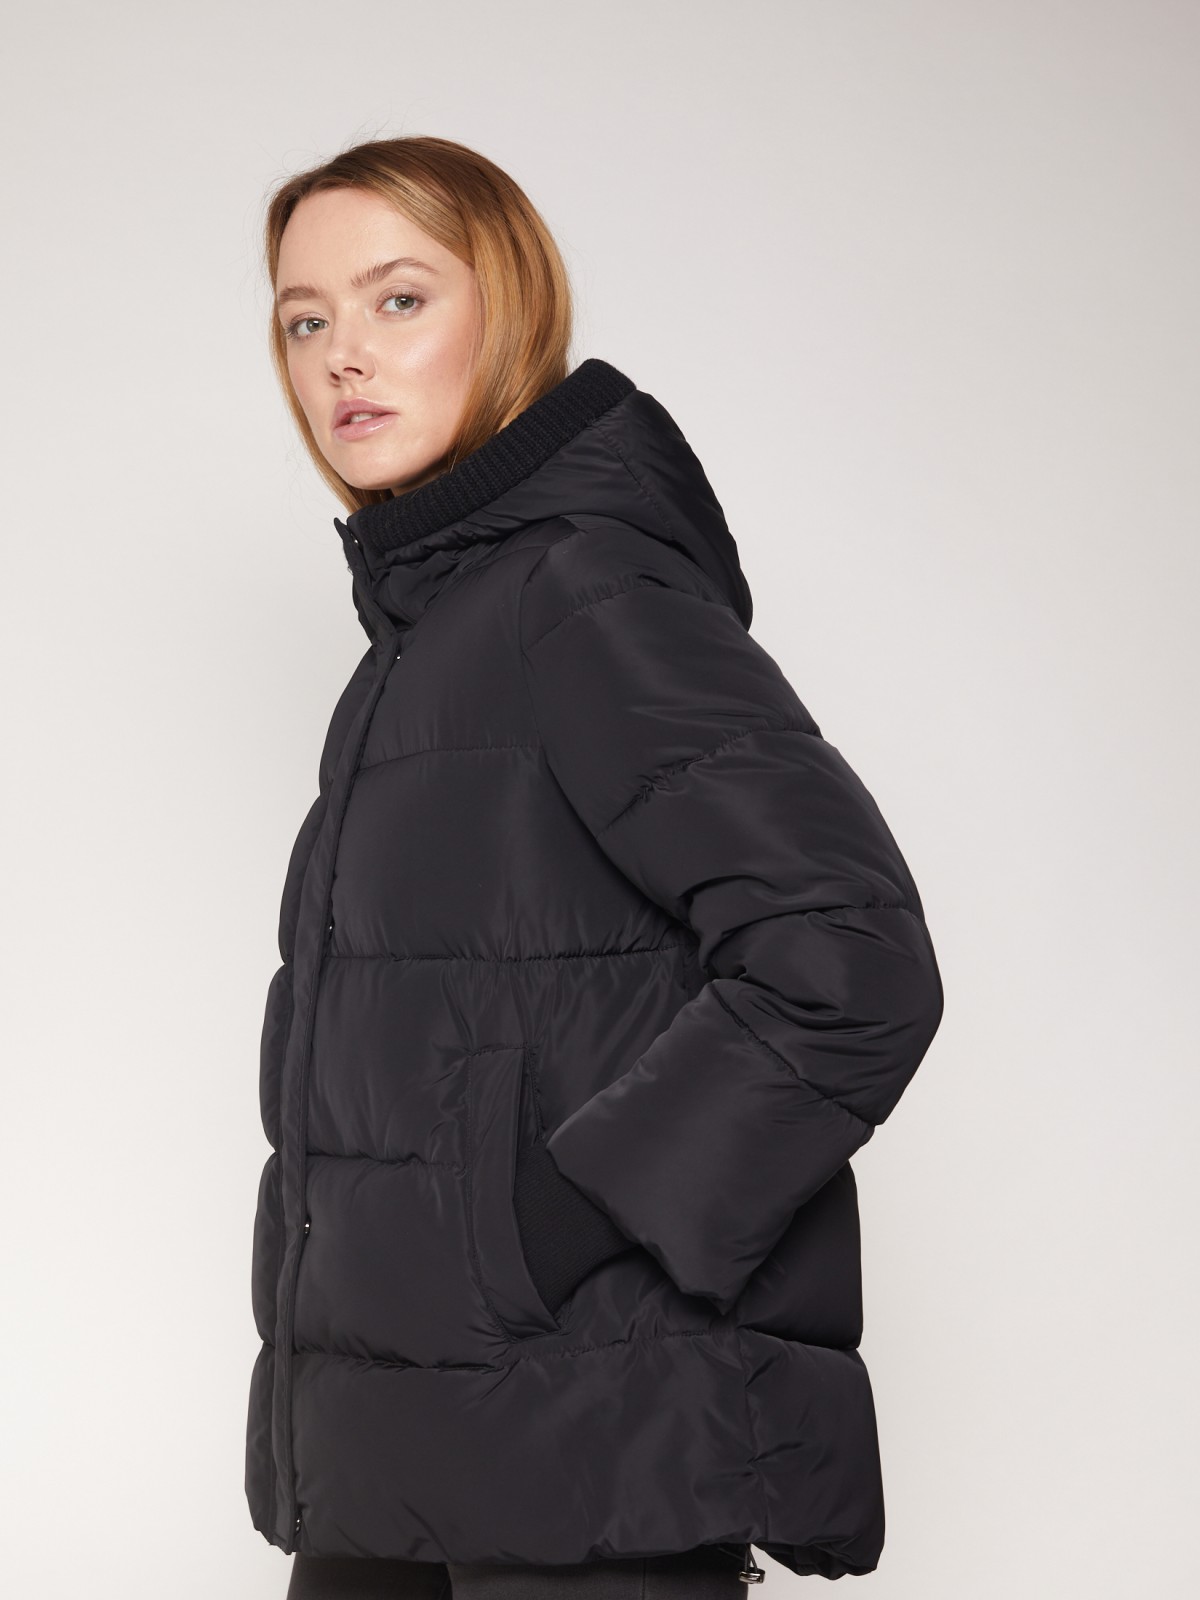 Тёплая стёганая куртка с капюшоном zolla 021335102264, цвет черный, размер S - фото 4